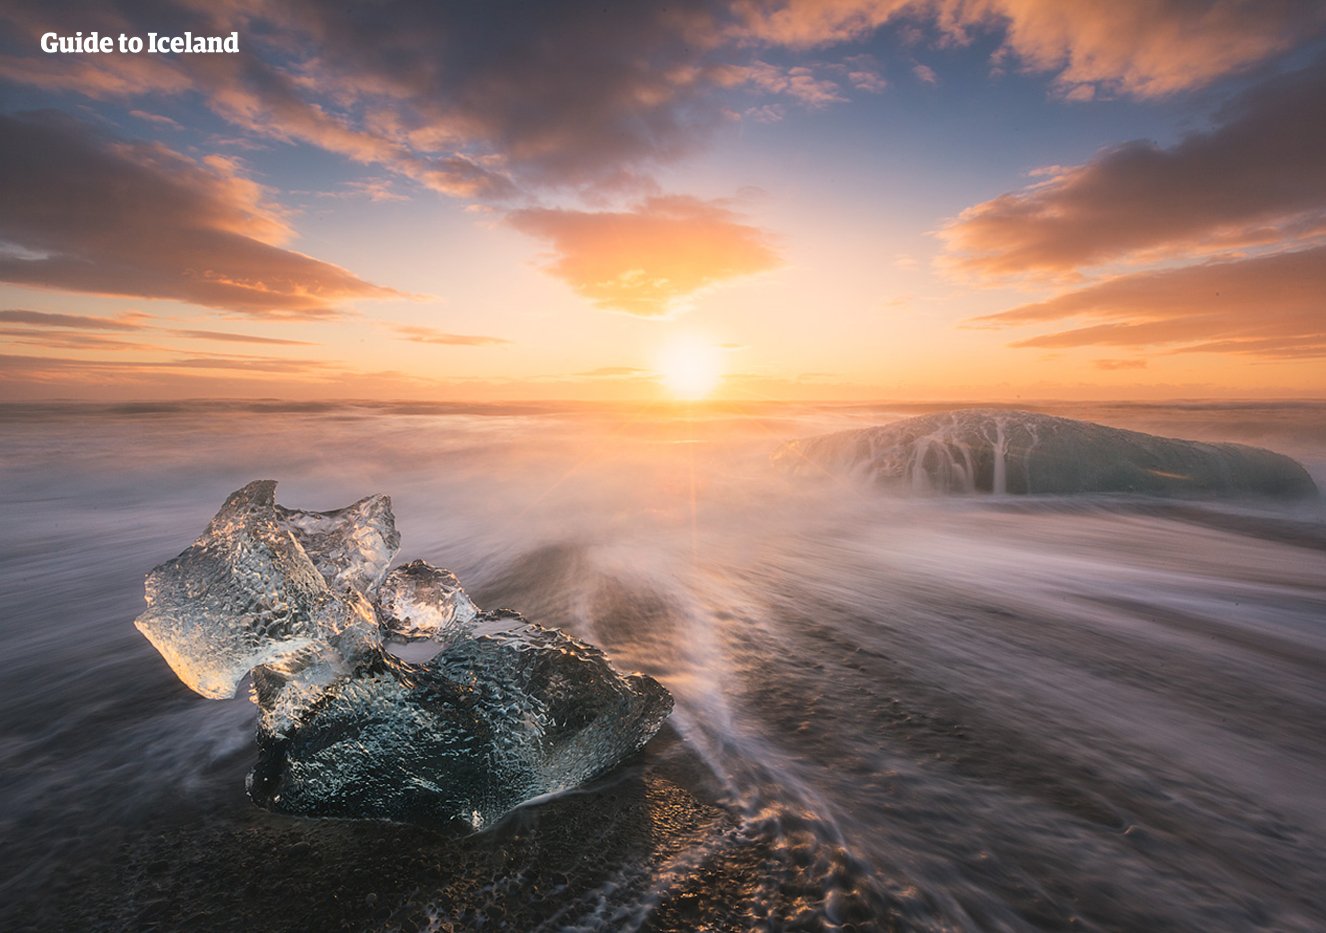 Diamentowa Plaża na Islandii to kawałek wybrzeża, gdzie znajduje się wiele niesamowitych gór lodowych leżących na czarnym piasku.